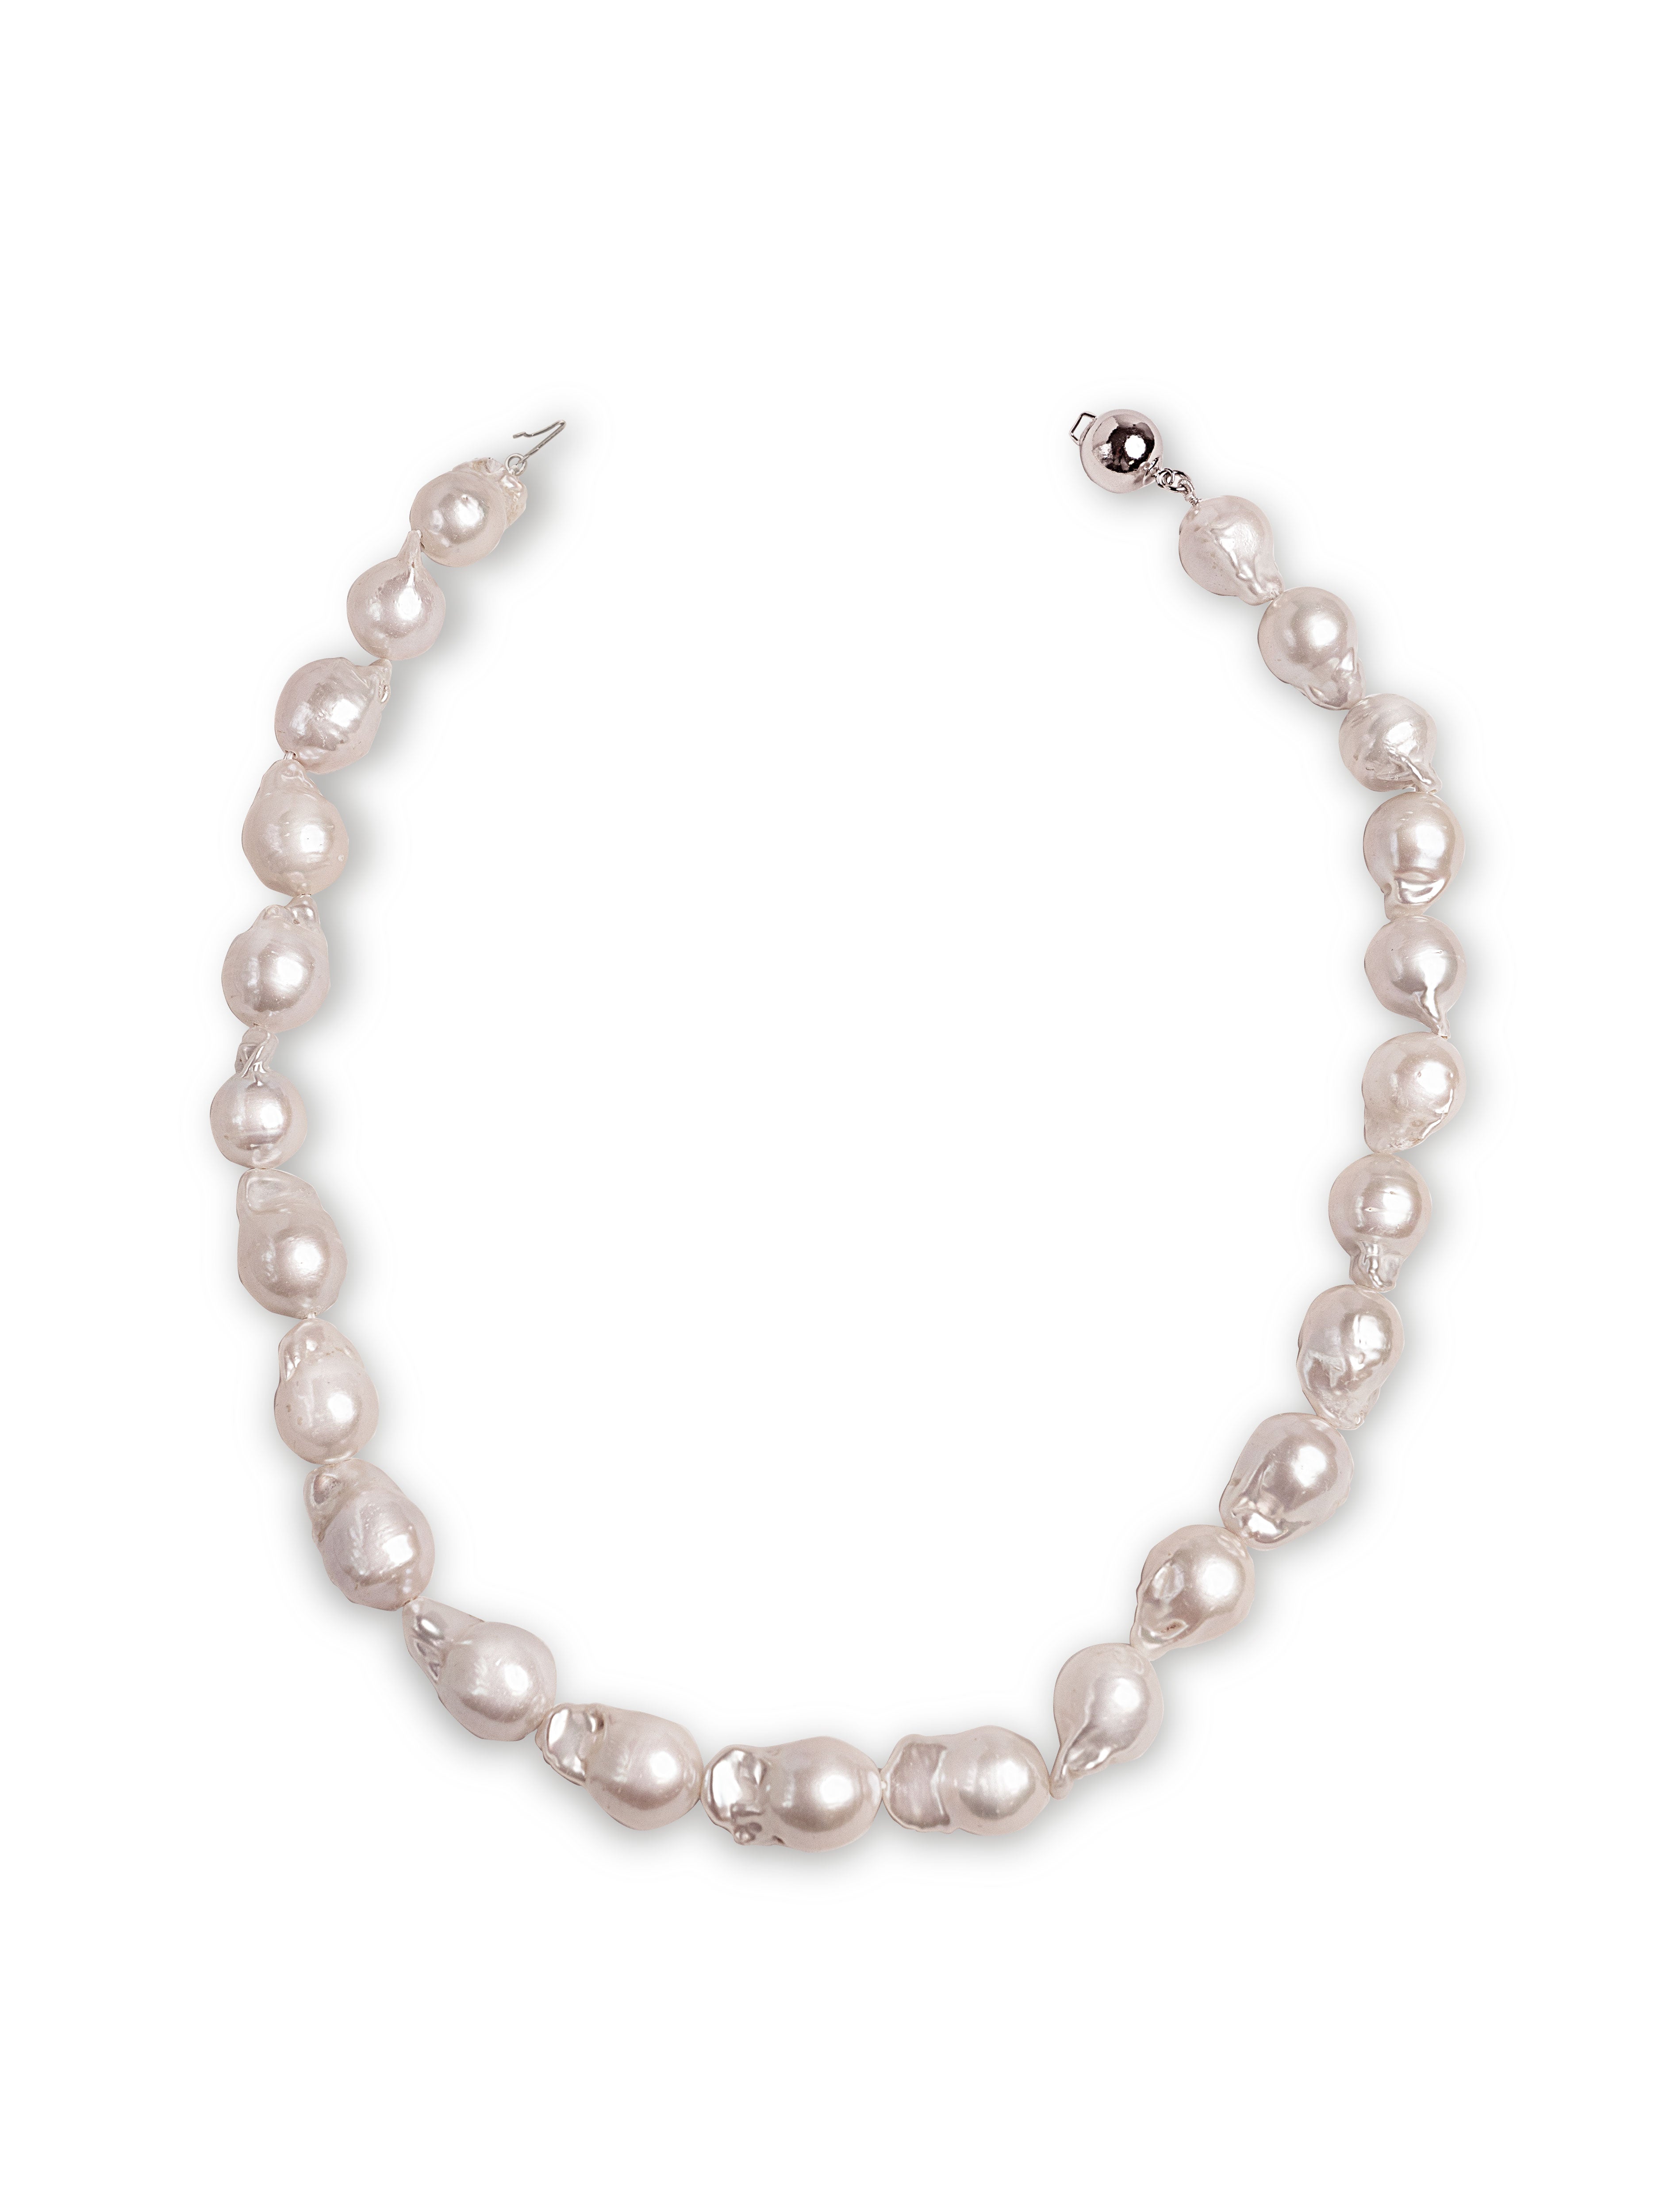 Collar de Perlas de Agua Dulce Barrocas de 12-13mm, 42cm.